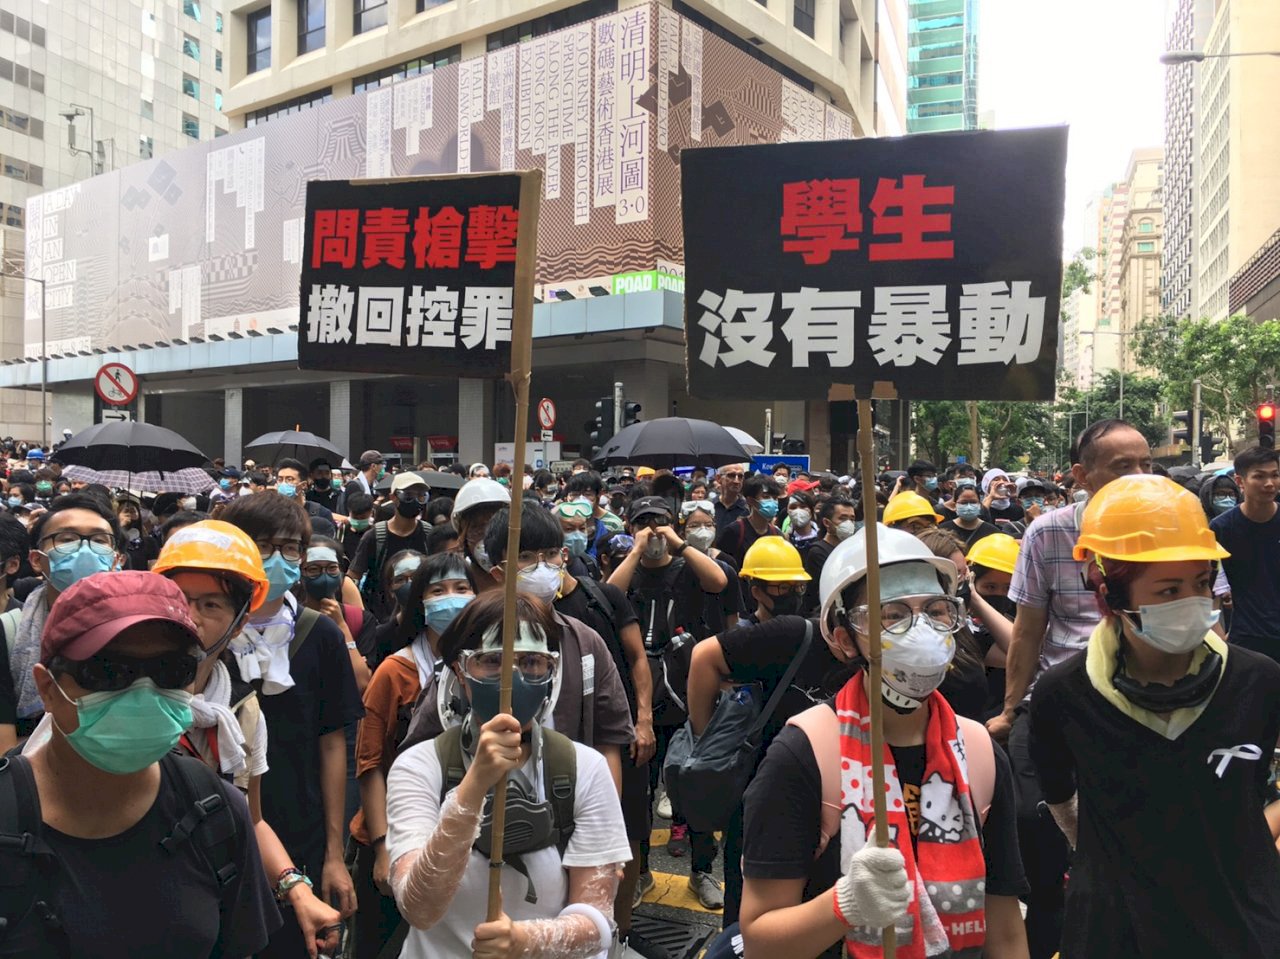 香港反送中示威誰參與 調查指出多是高學歷青年